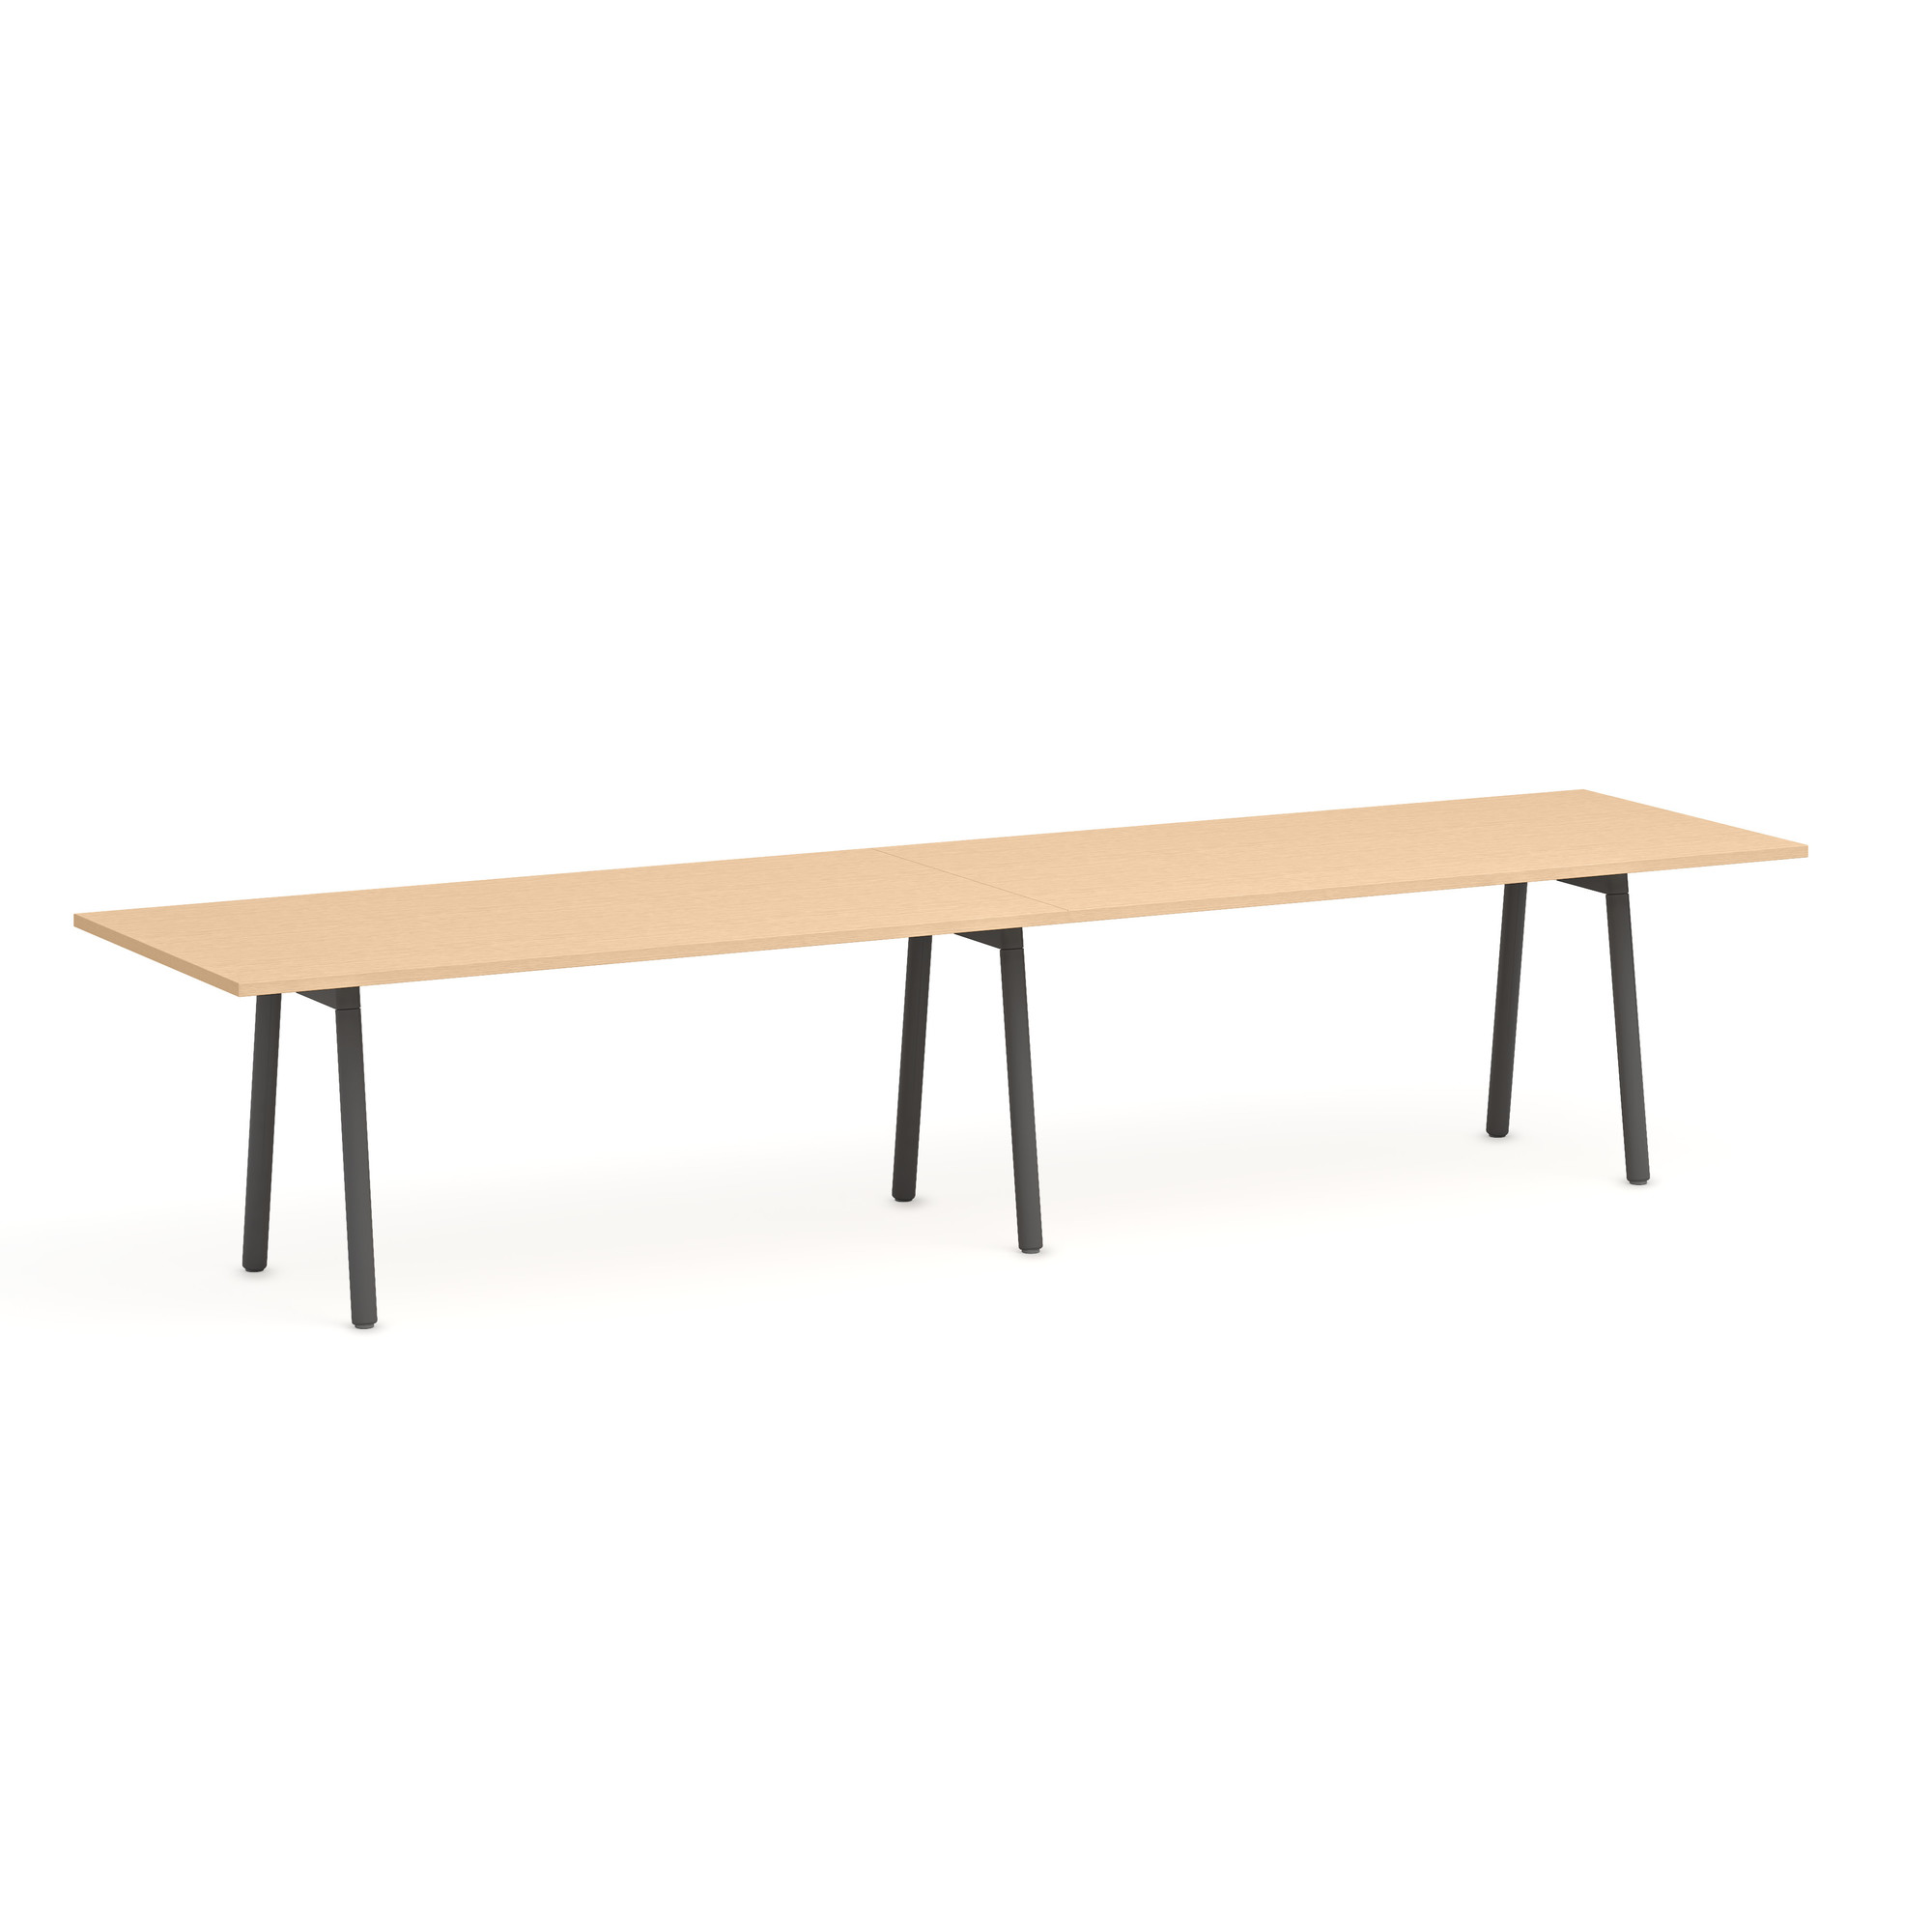 Series A Conference Table, Natural Oak, 144x36", Charcoal Legs,Natural Oak,hi-res